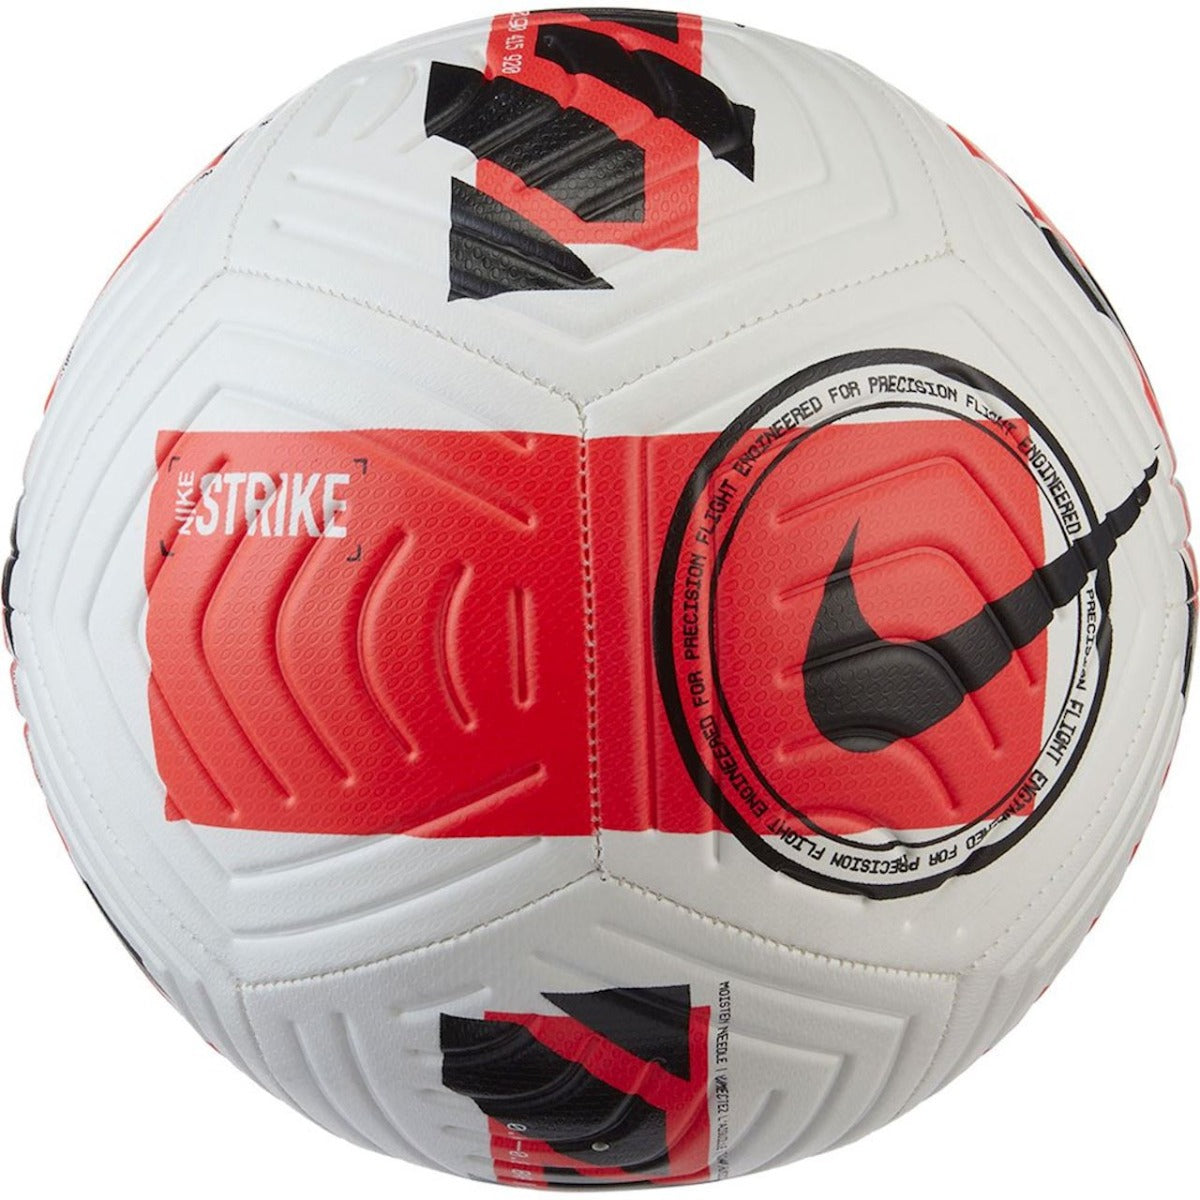 Nike Strike Soccer Ball - White Bright Crimson (Front)